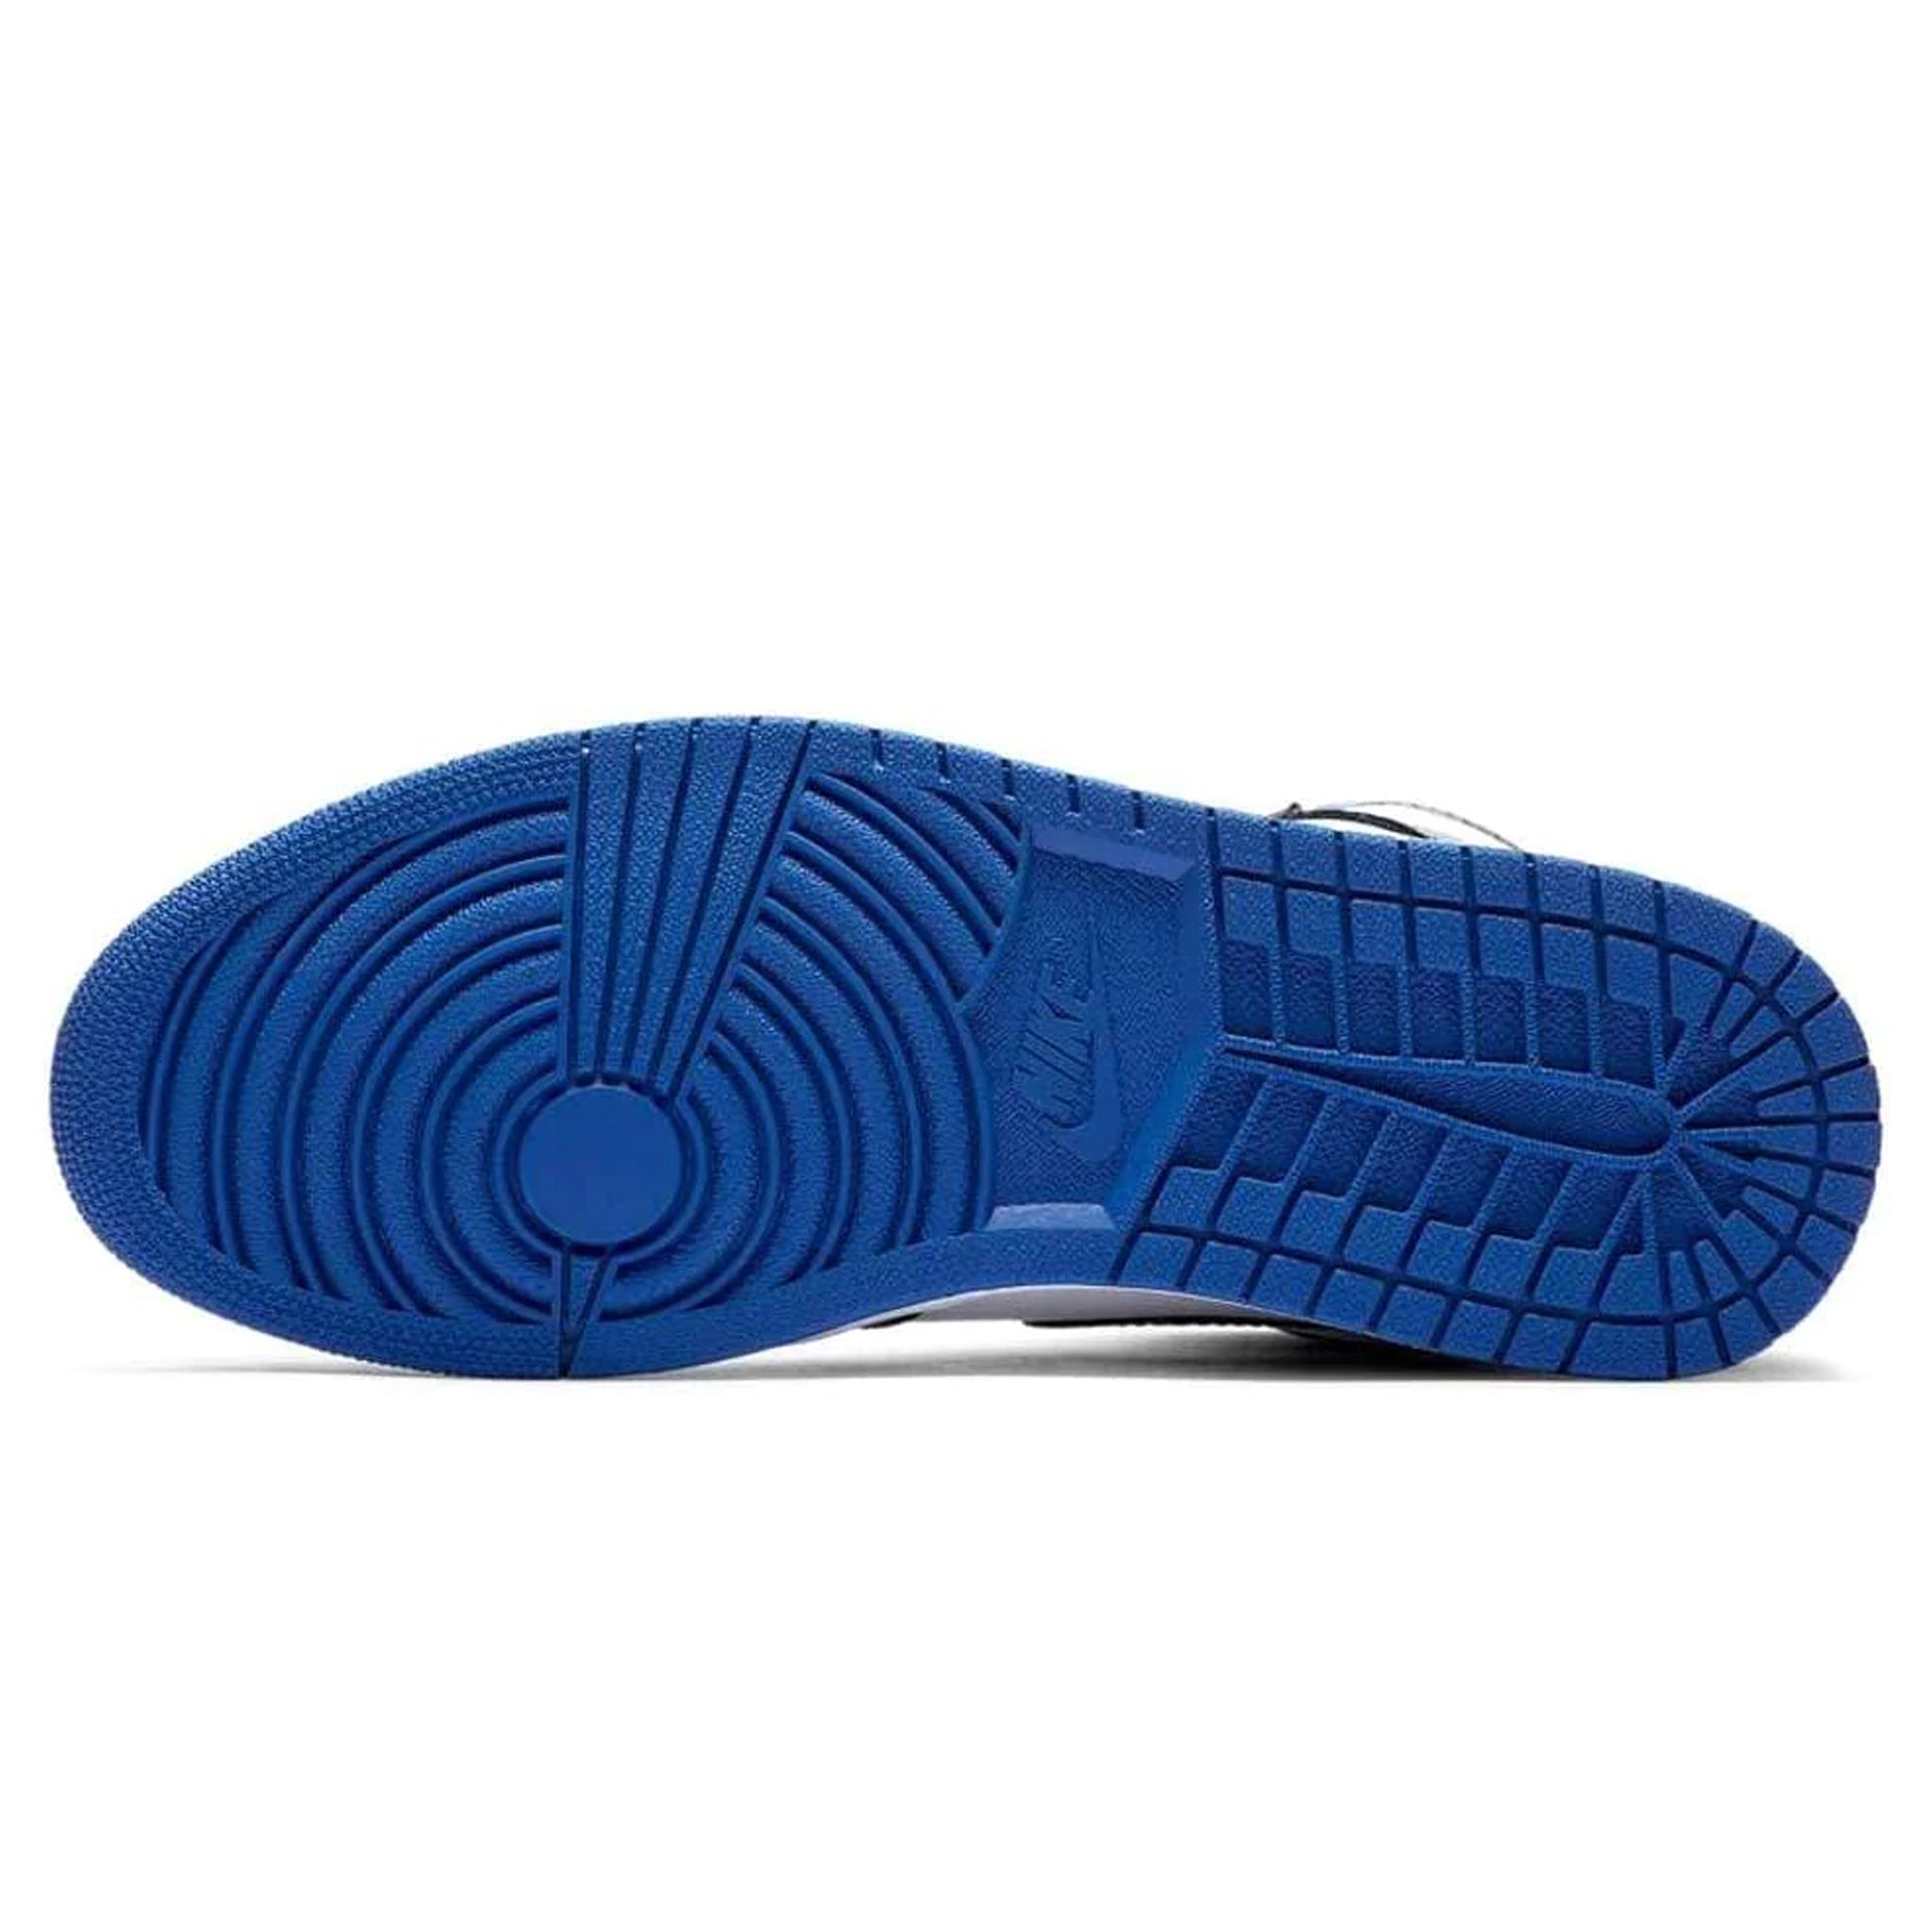 Sole view of Air Jordan 1 Royal Toe Sneaker 555088-041